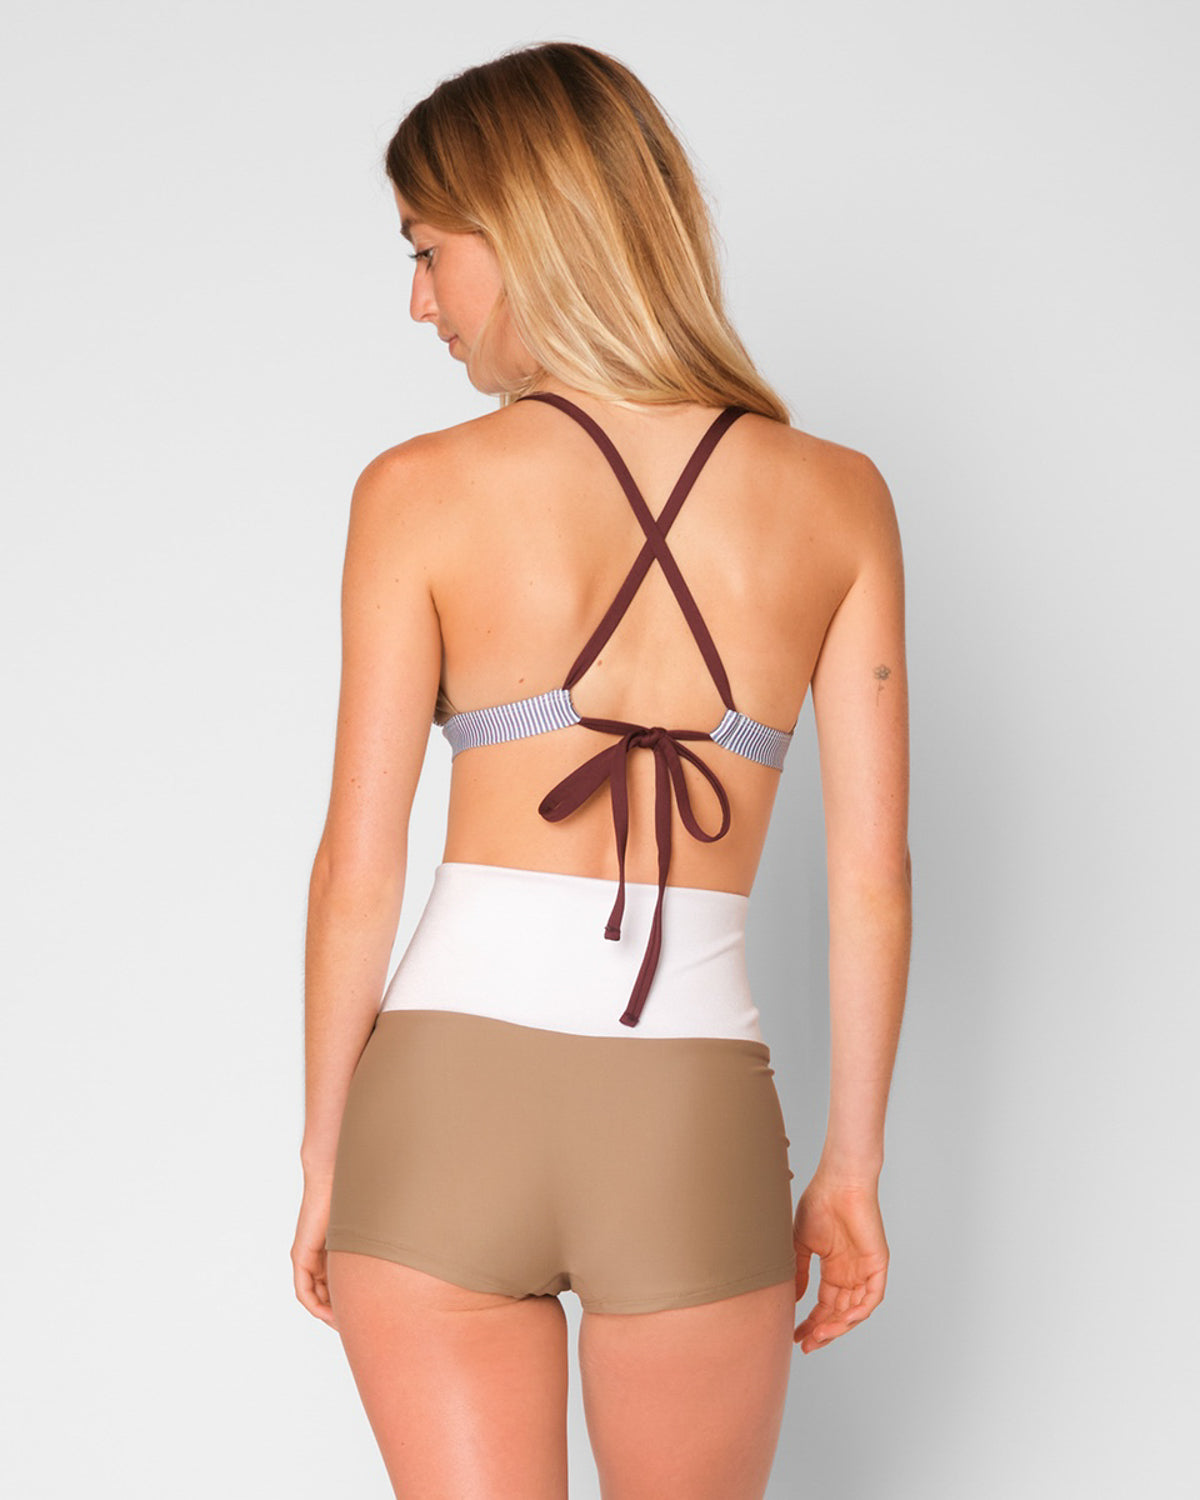 Leucadia High Waist Bikini Bottom - Sailor Stripe